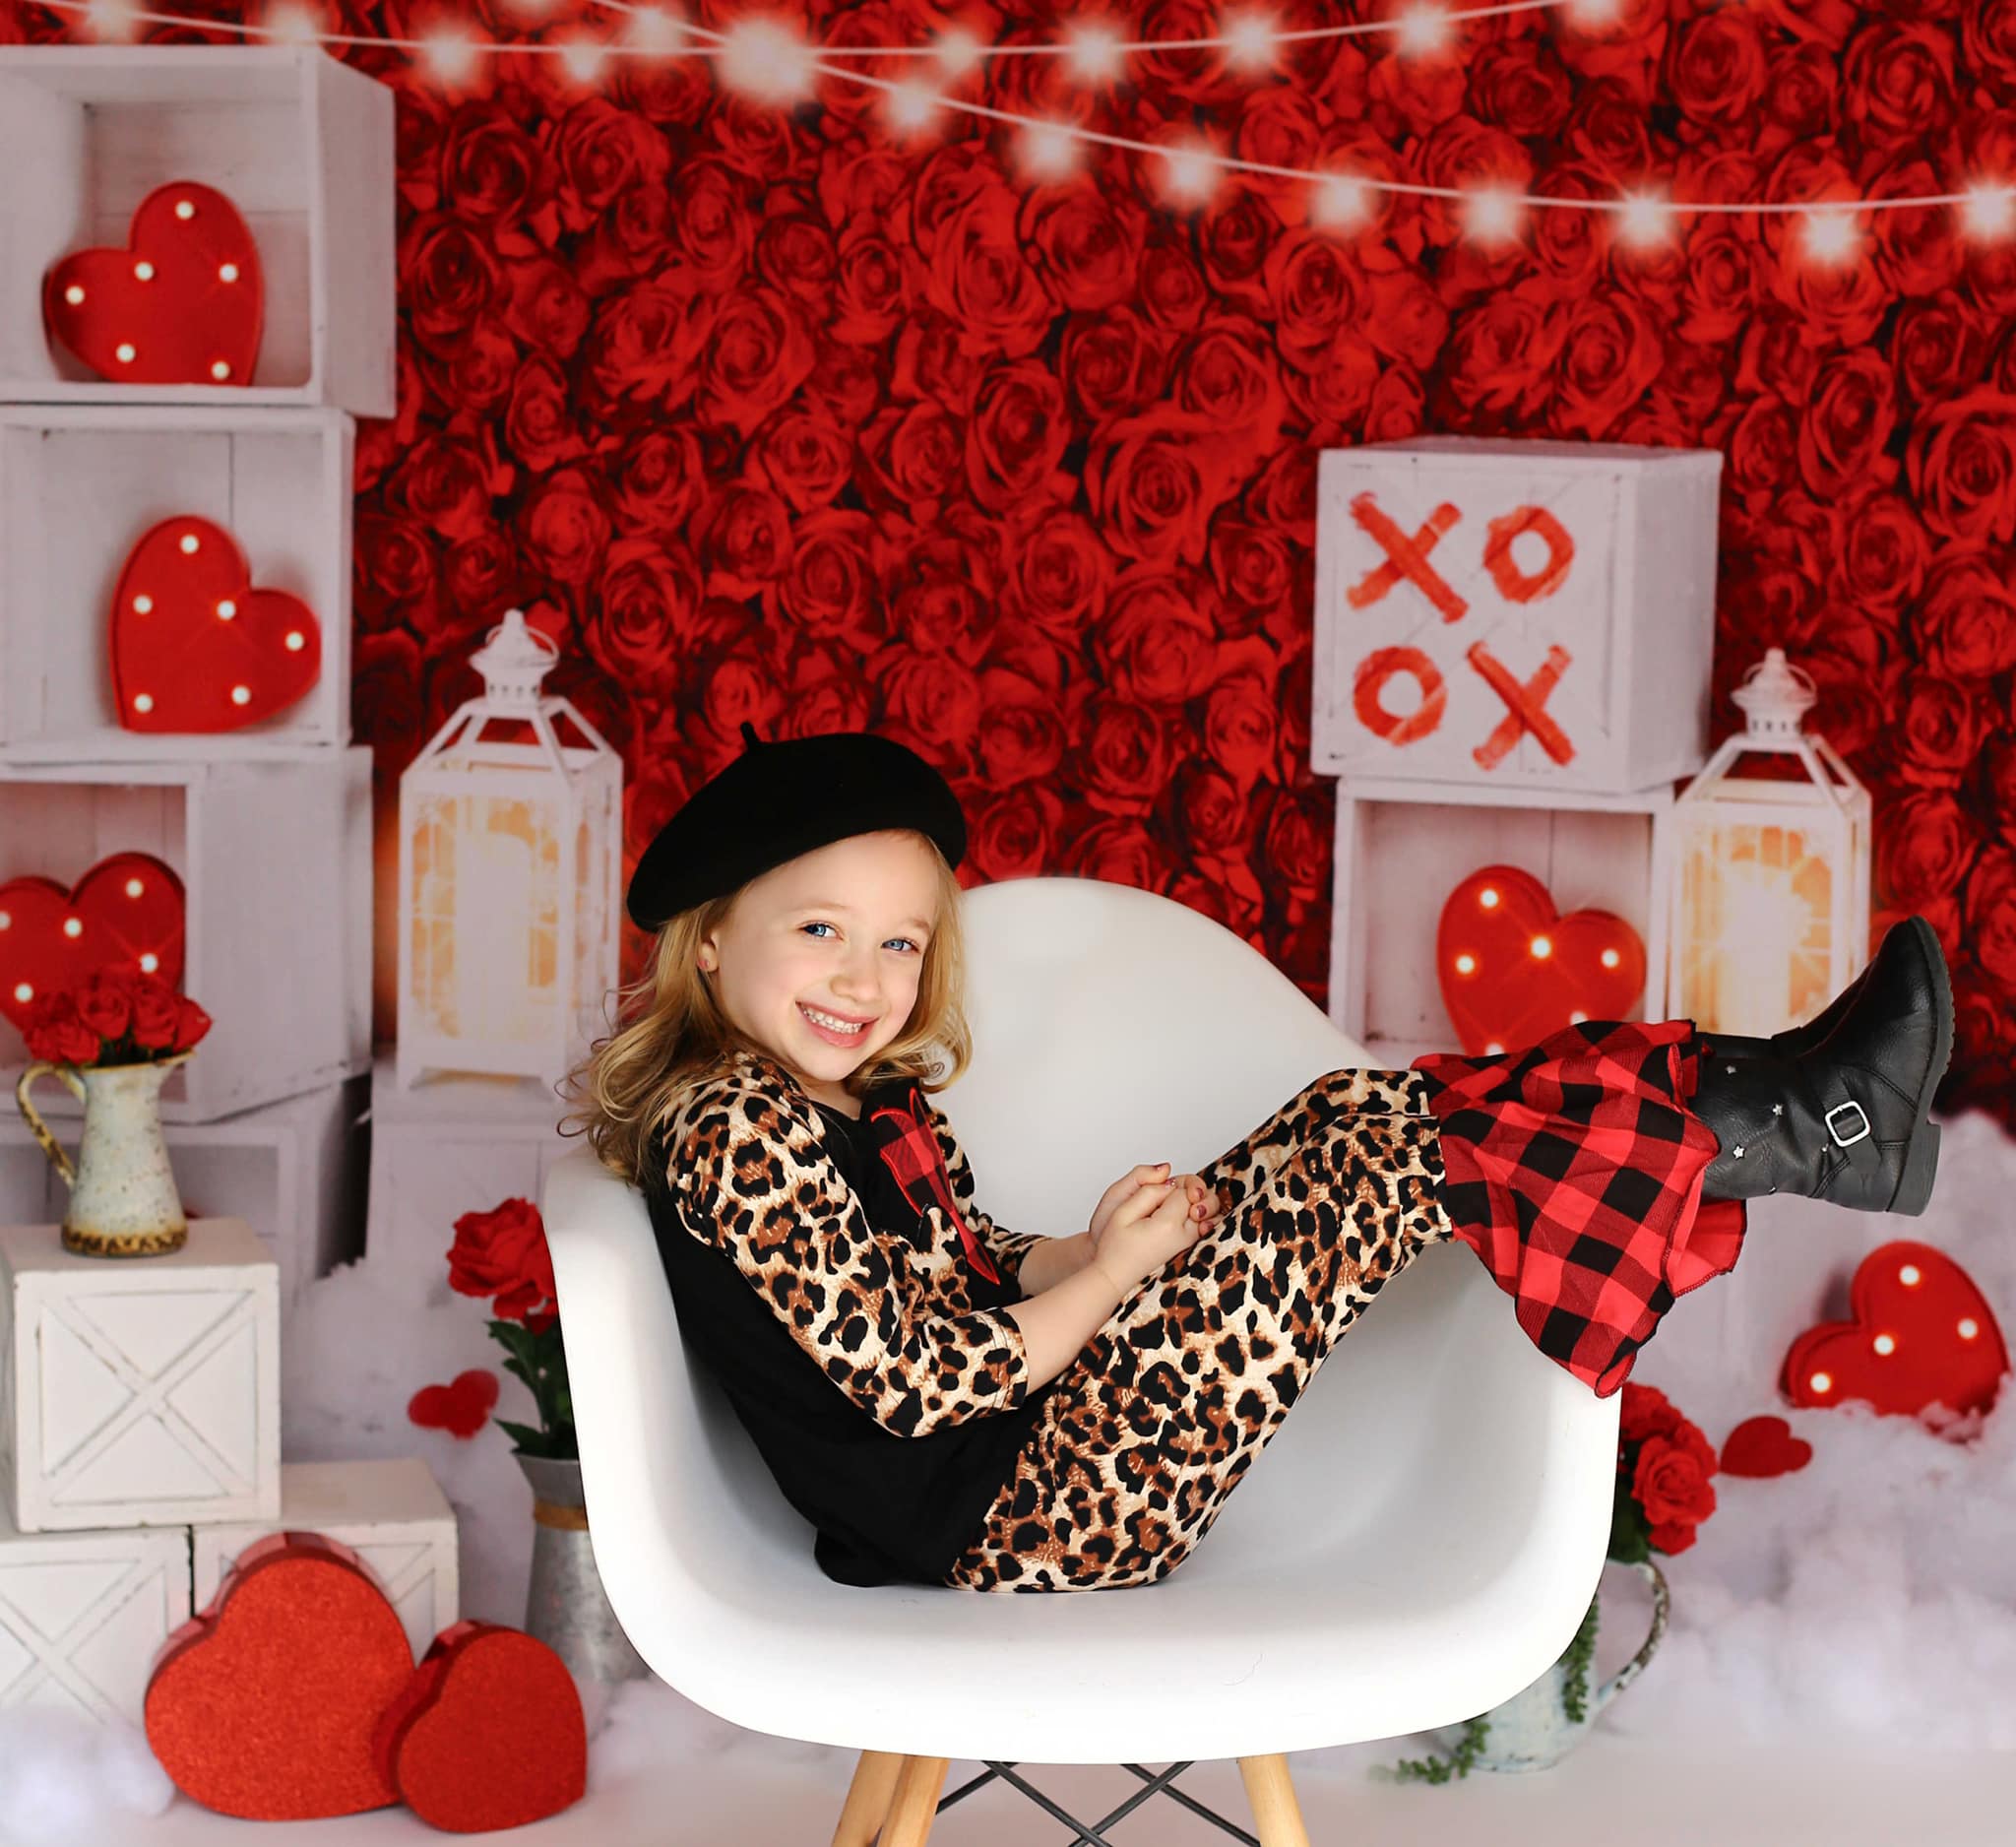 Kate 赤いバラのバレンタインデーの写真撮影の背景